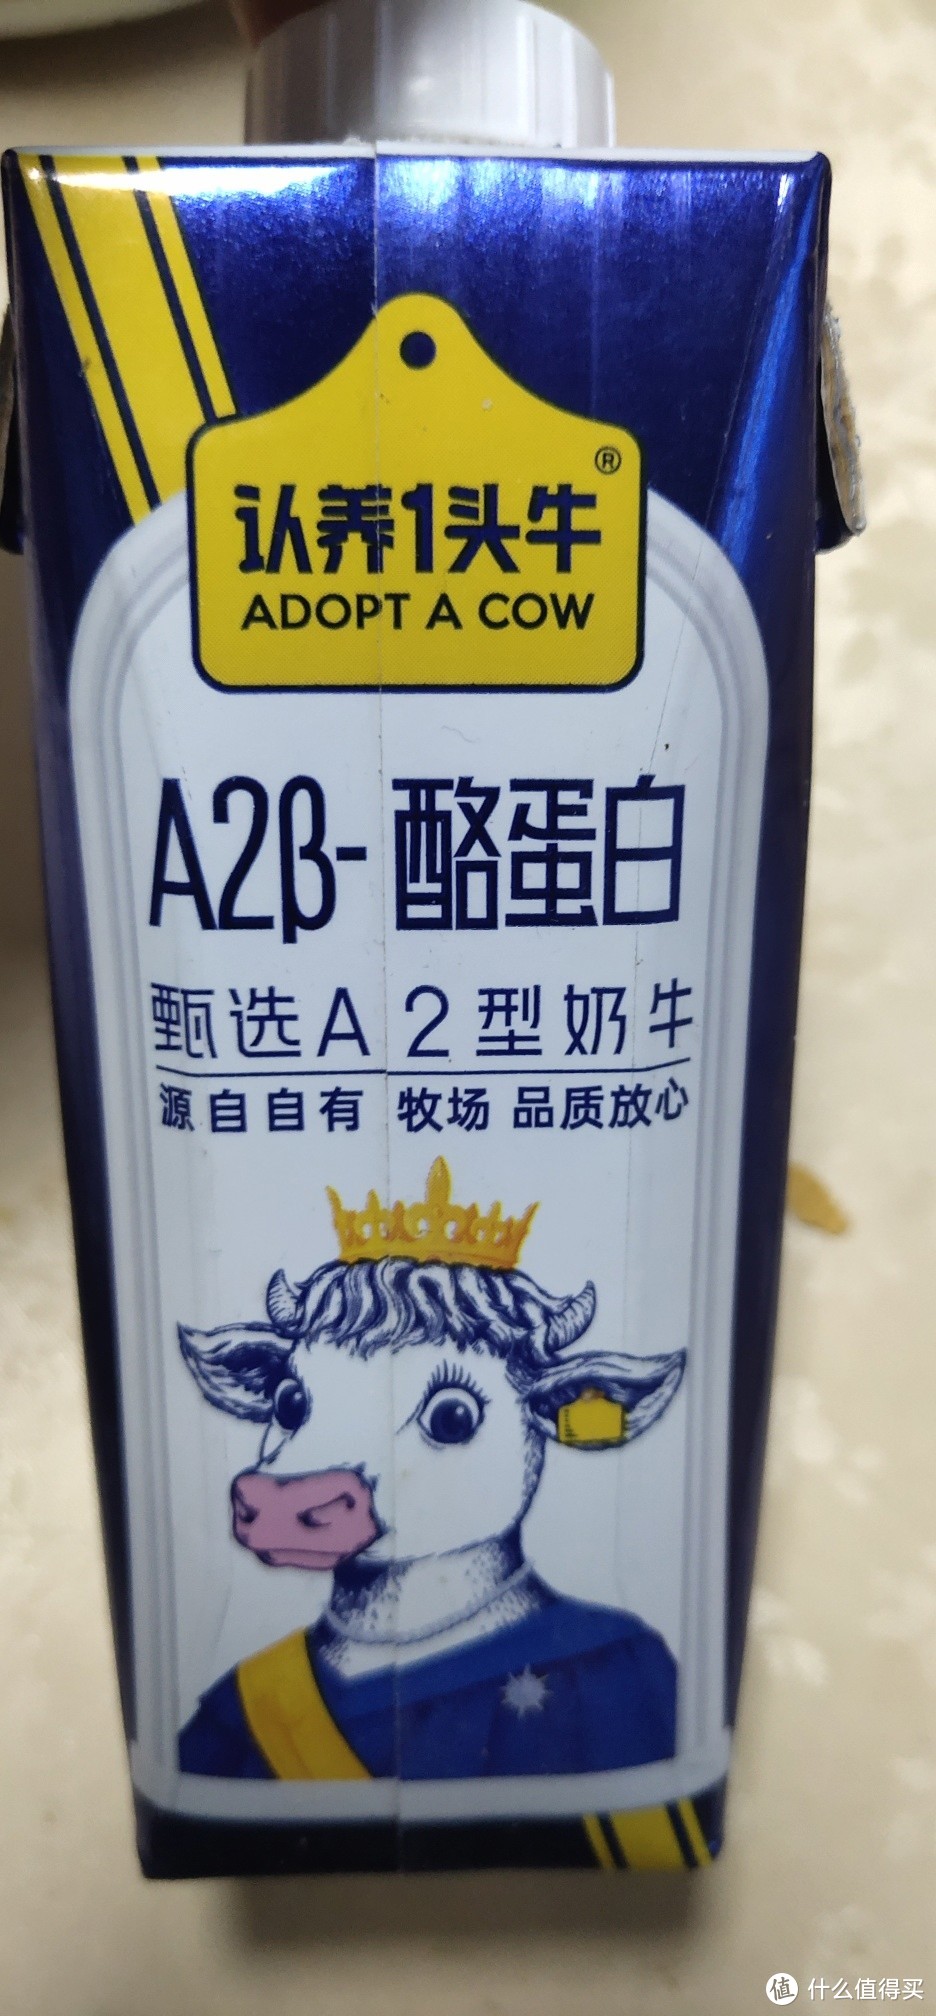 认养一头牛的A2β-酪蛋白牛奶